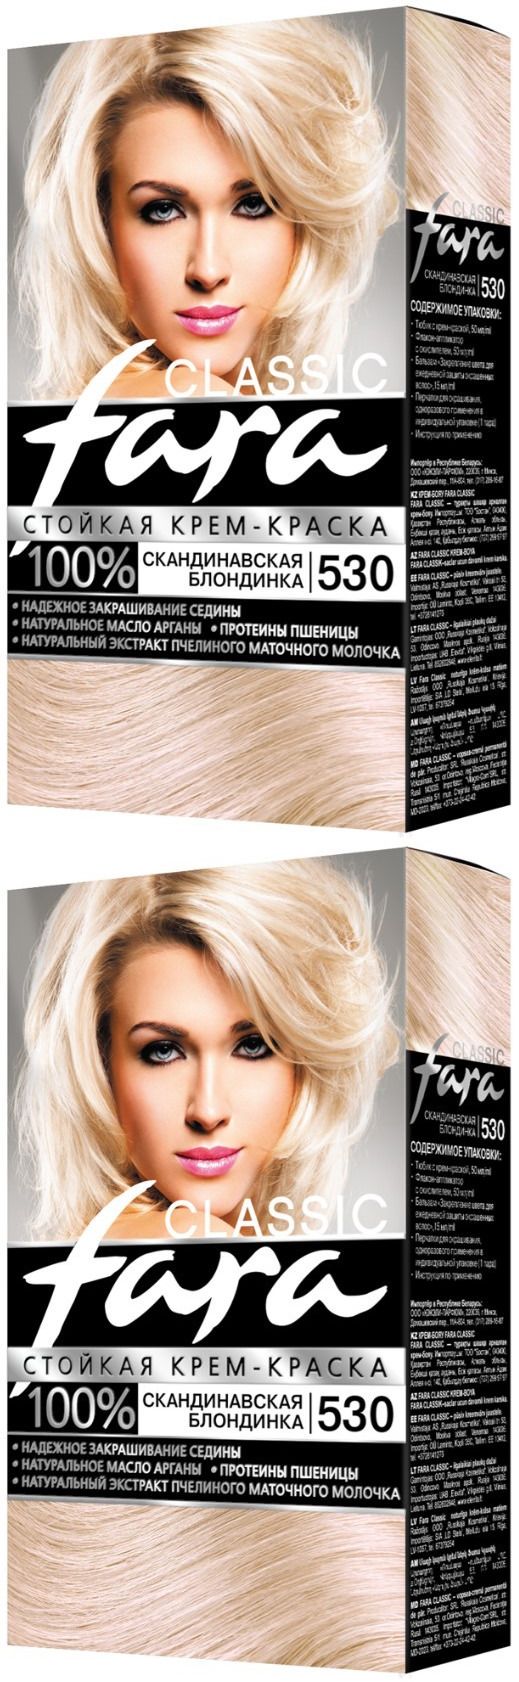 Краска для волос Fara Classic, тон 530, скандинавская блондинка, 2 шт. асгард скандинавская мифология